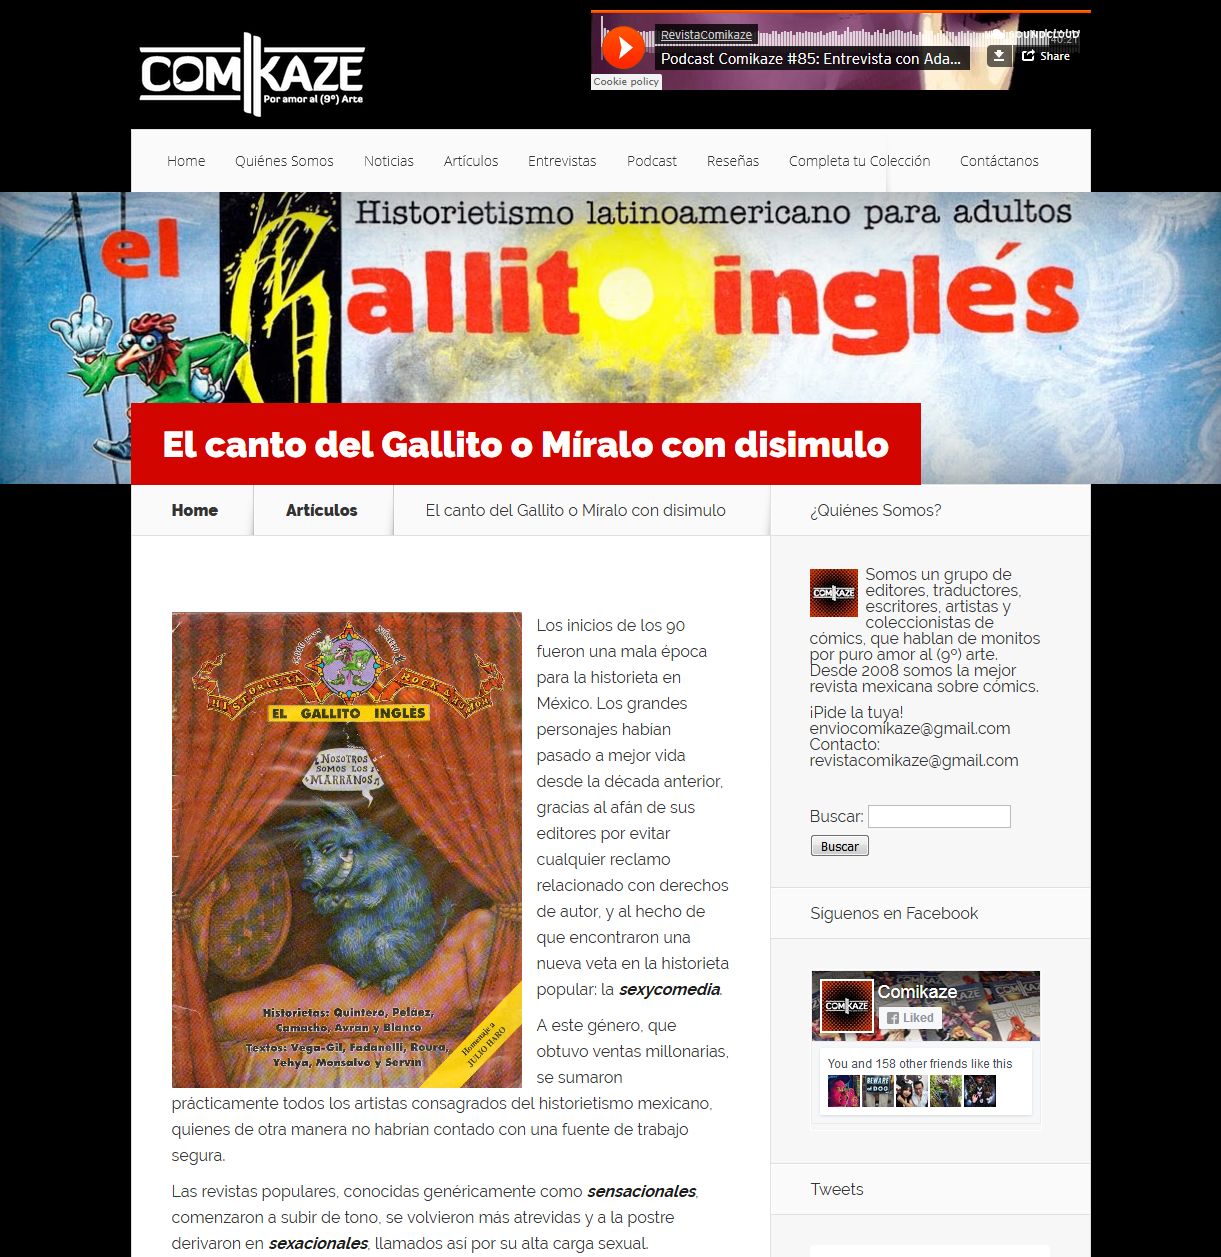 El canto del Gallito o Míralo con disimulo I Comikaze' - www_comikaze_net_el-gallito-ingles